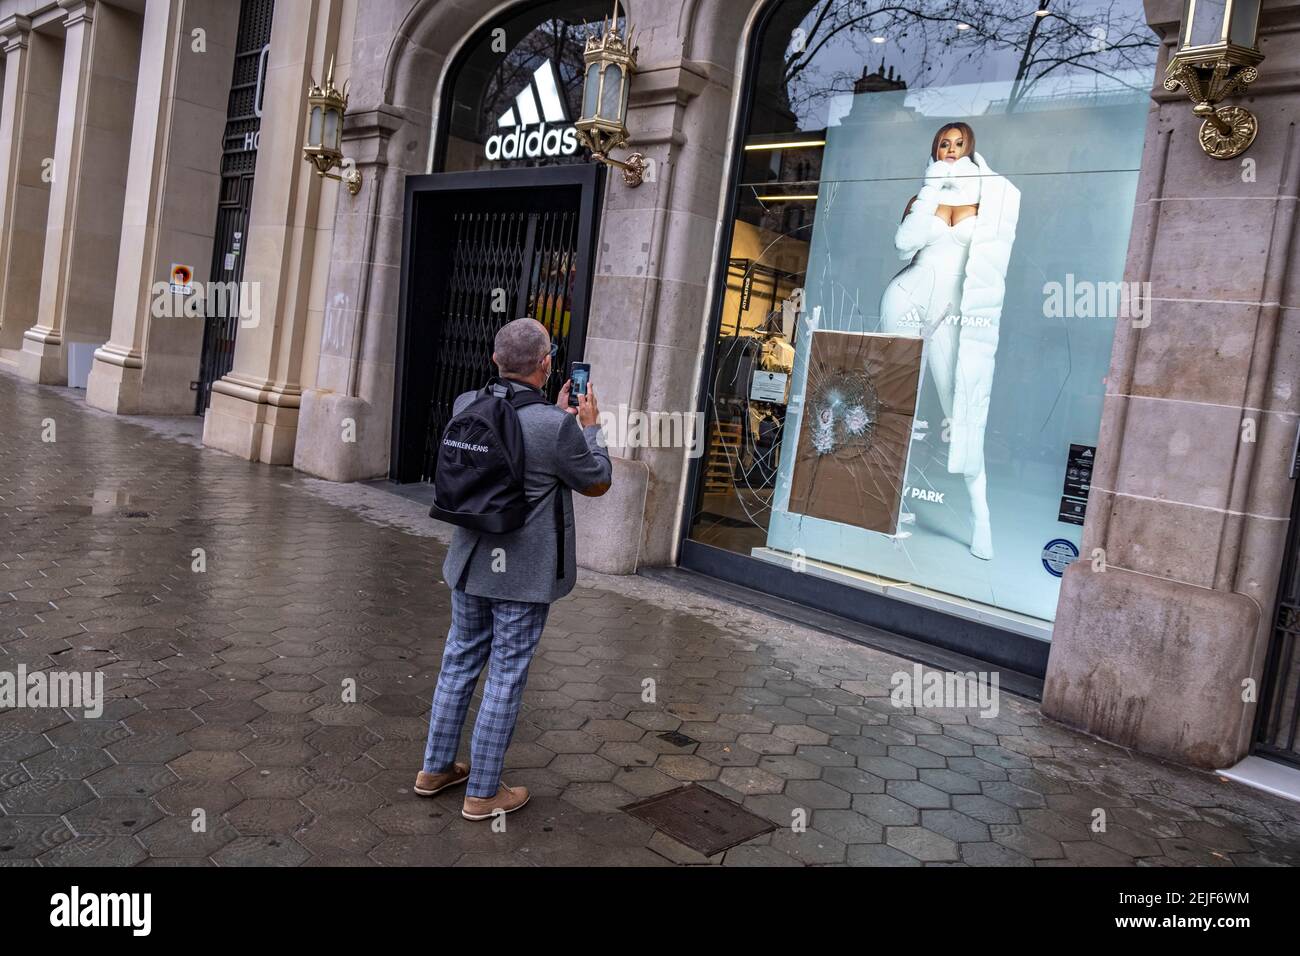 Barcelona, España. 22 de febrero de 2021. Se ve a un hombre haciendo fotos  de los daños a la tienda Adidas en el Passeig de Gràcia.más de 50 tiendas  han sufrido daños